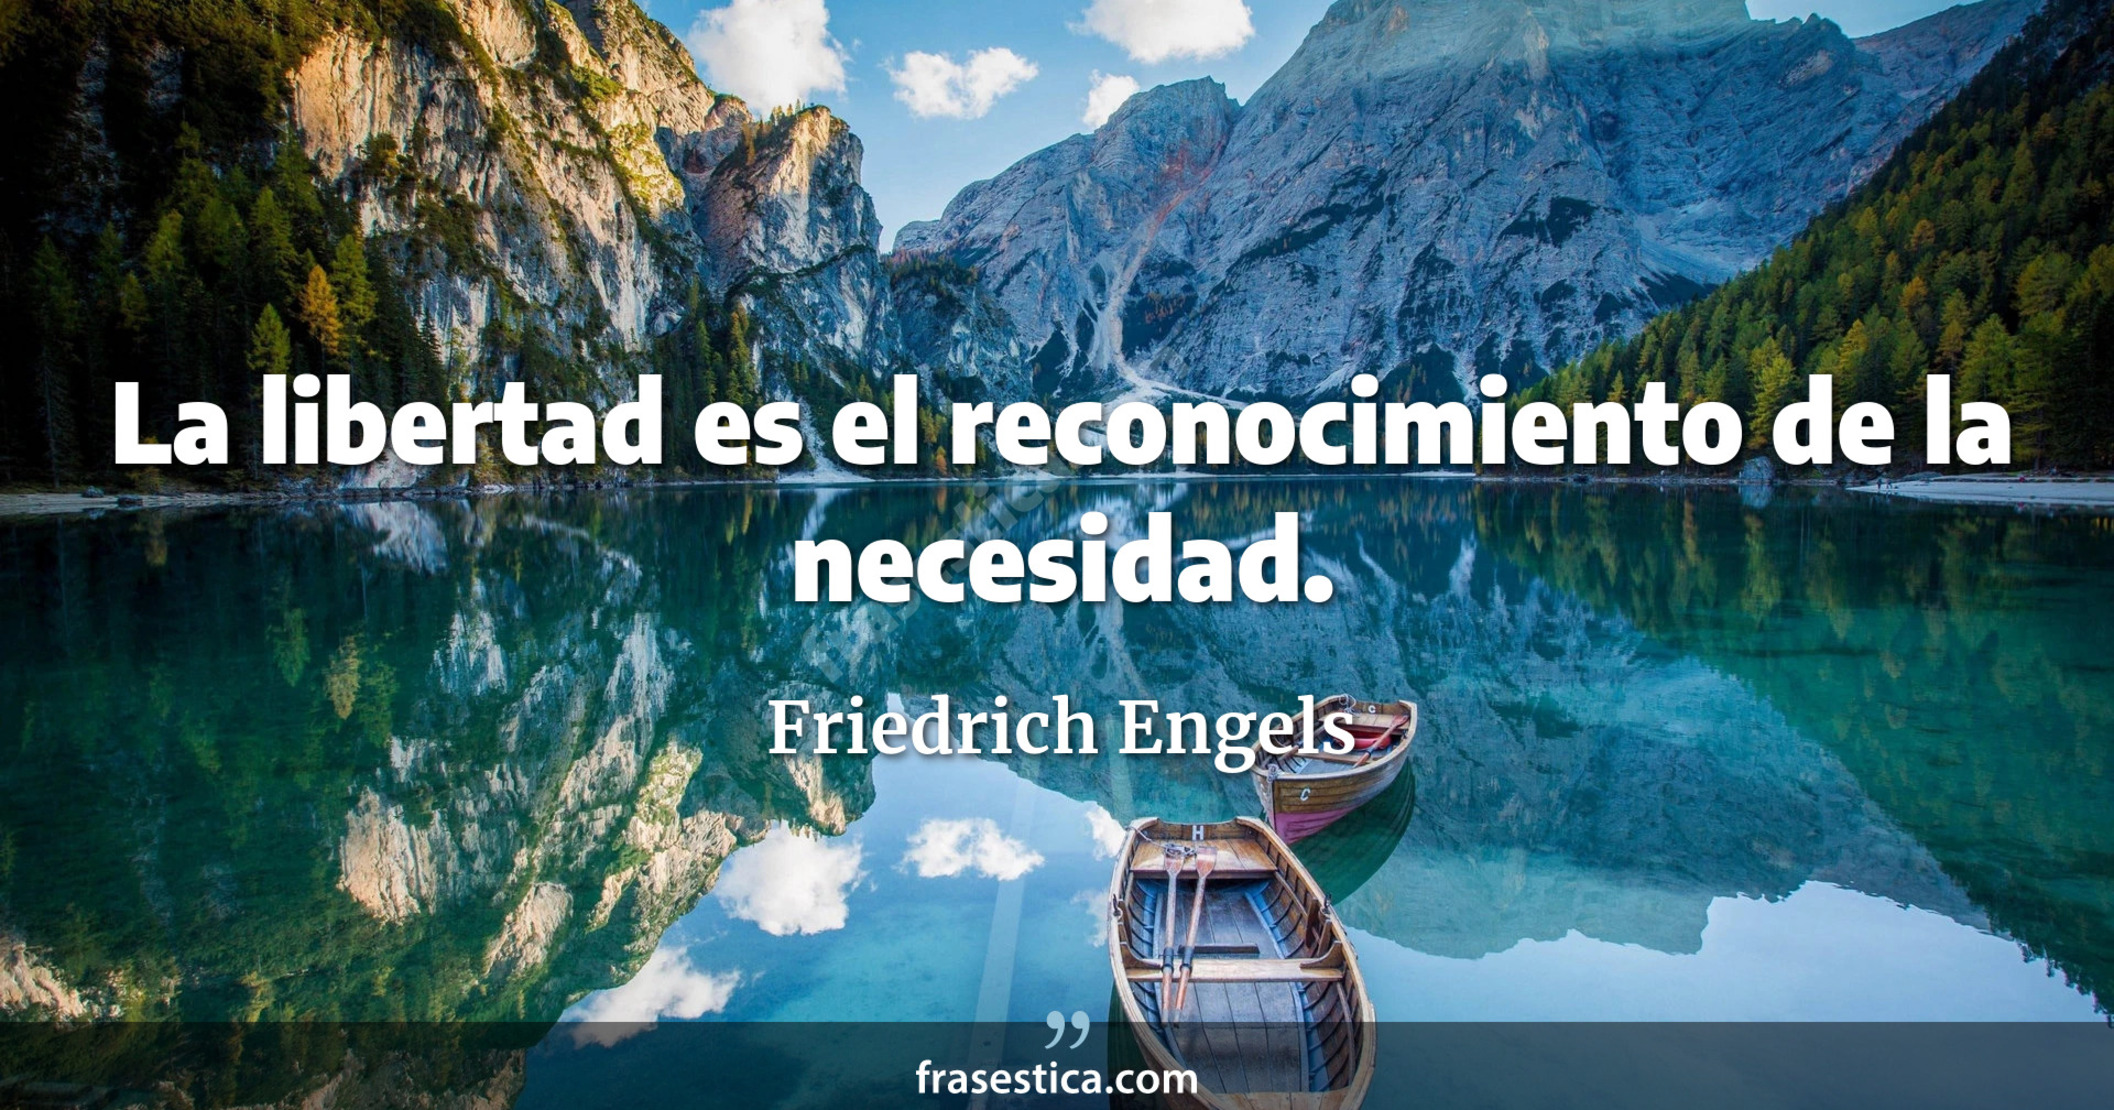 La libertad es el reconocimiento de la necesidad. - Friedrich Engels